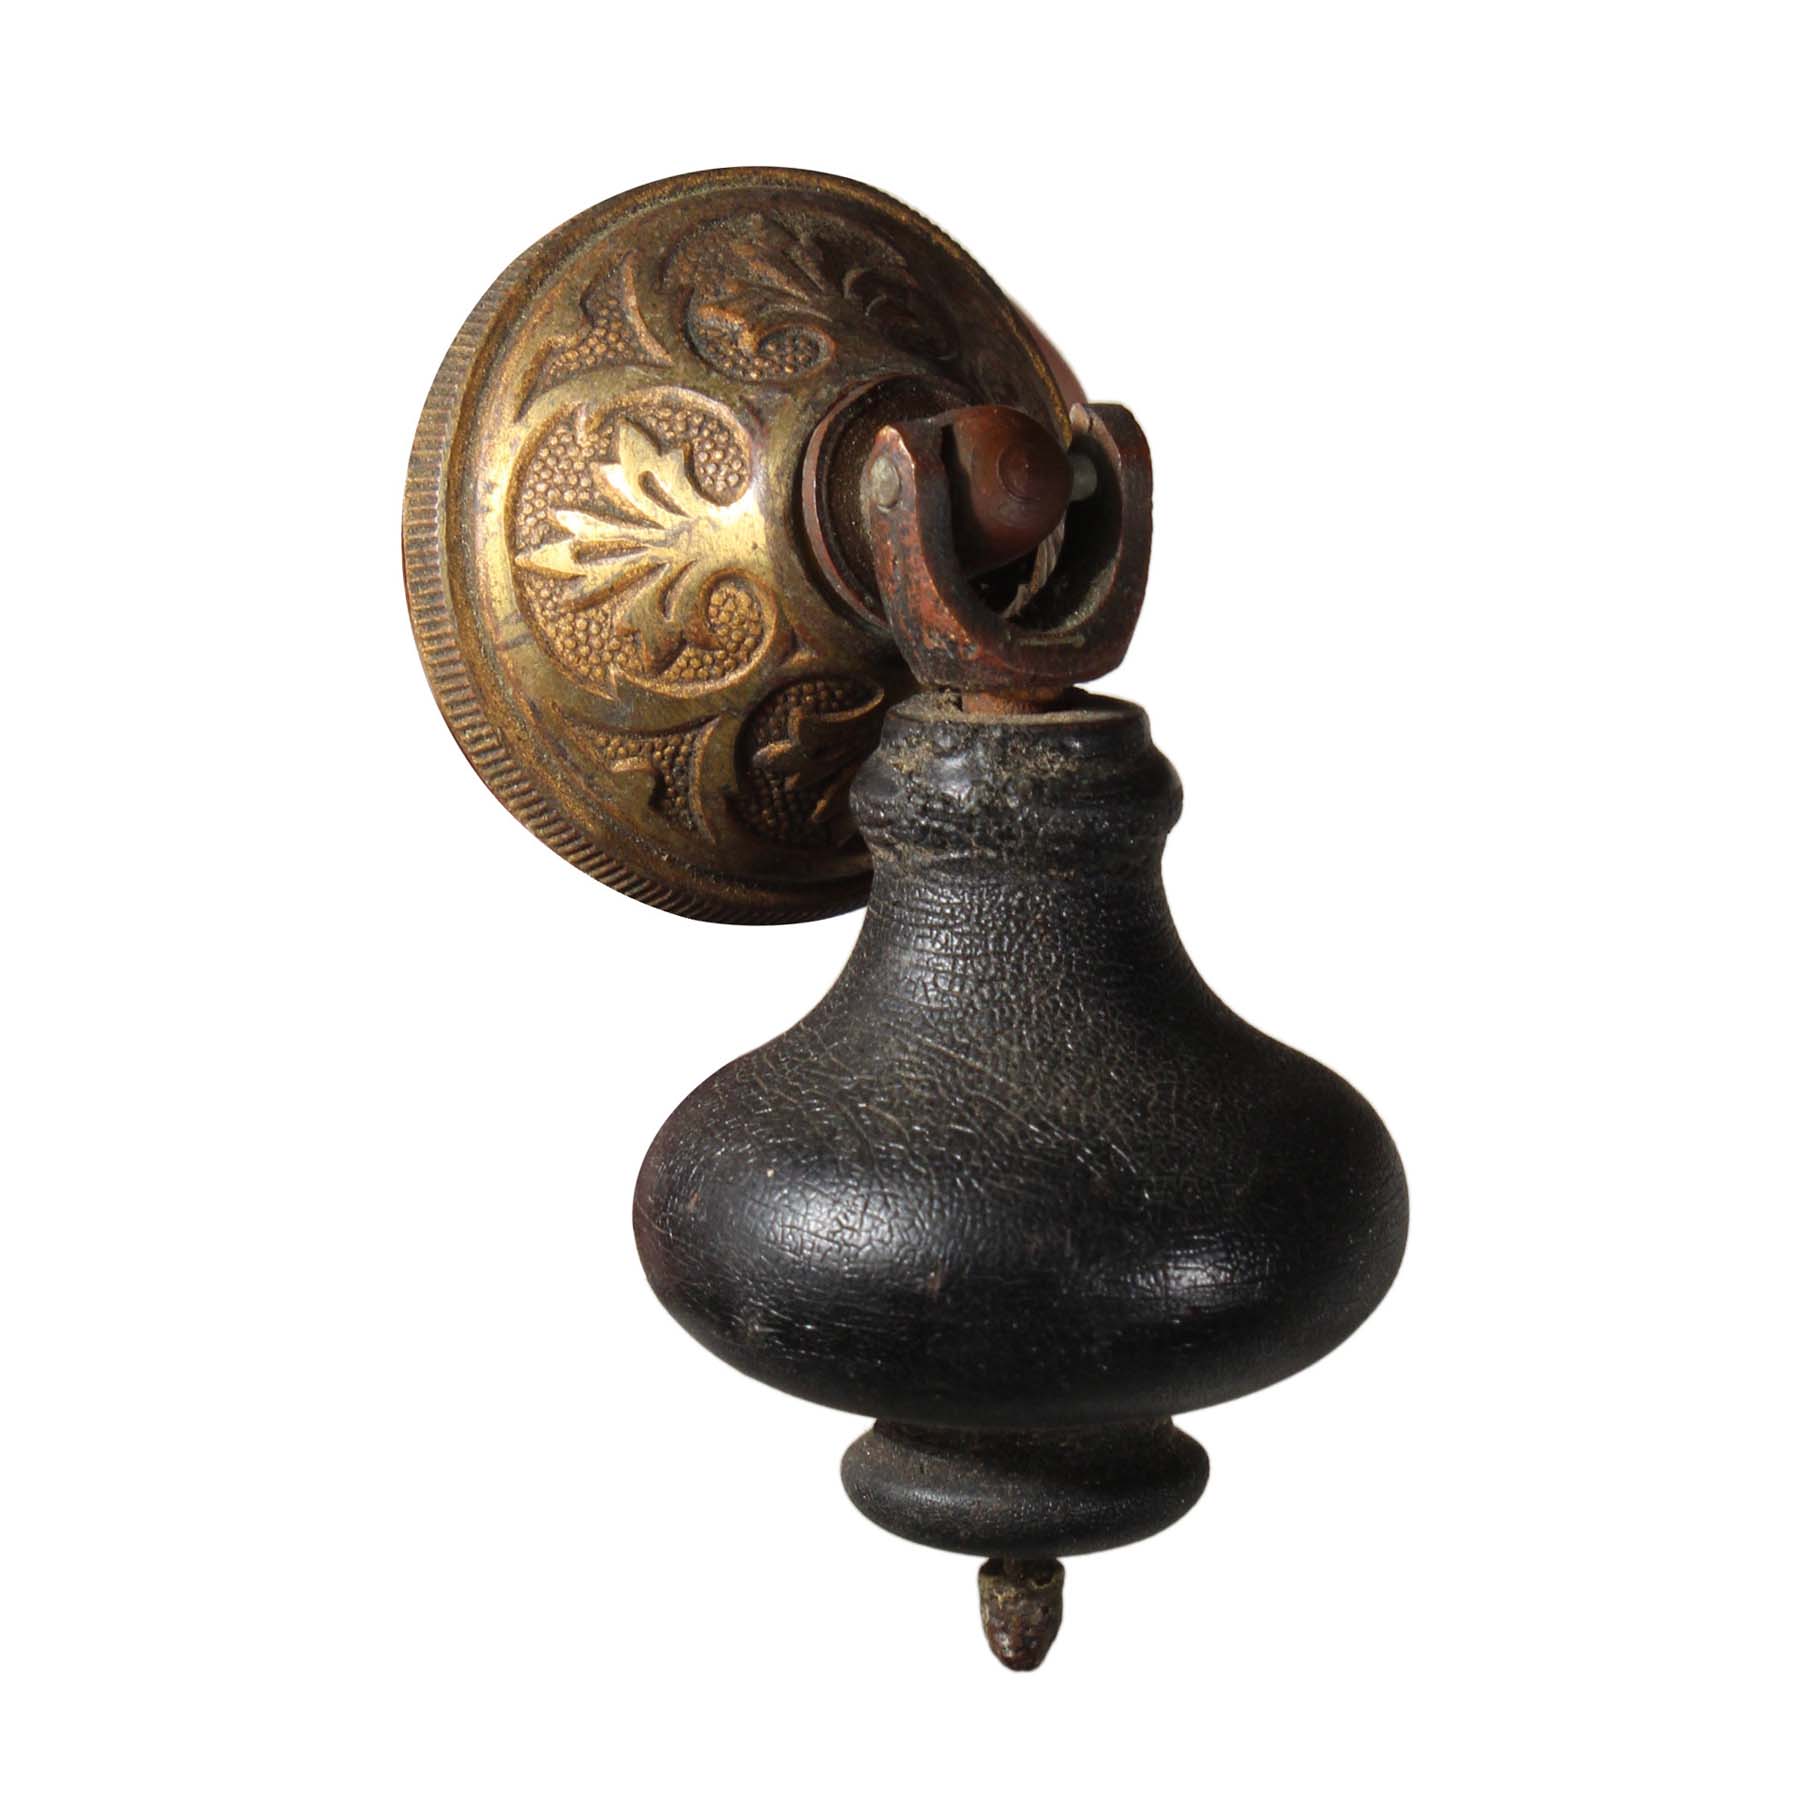 SOLD Antique Eastlake Drop Pulls, Brass & Wood-69718